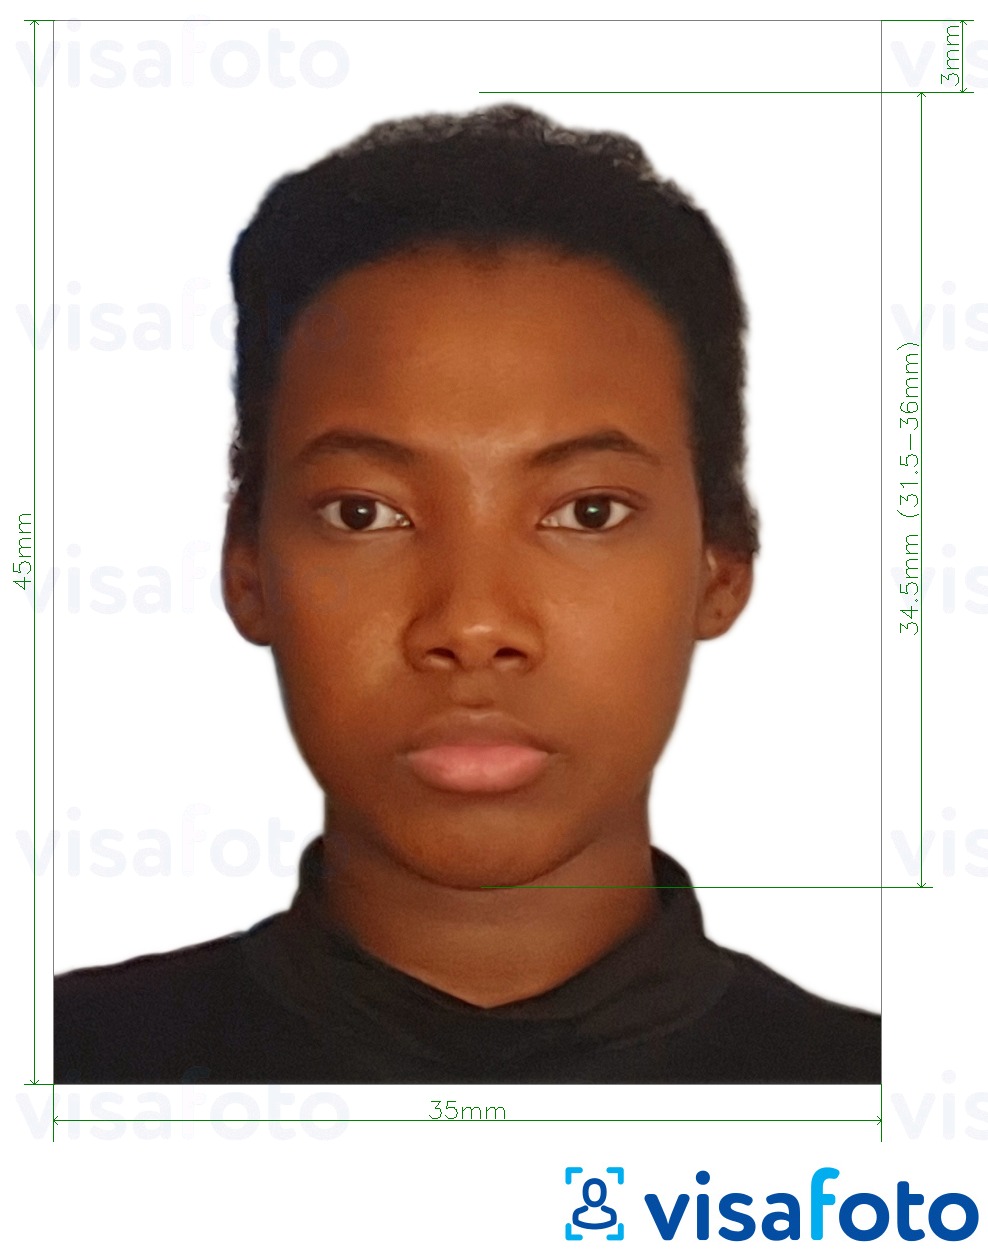 Exemples sur des photos pour Passeport Malawi 4,5x3,5 cm (45x35 mm) avec les spécifications de taille exactes